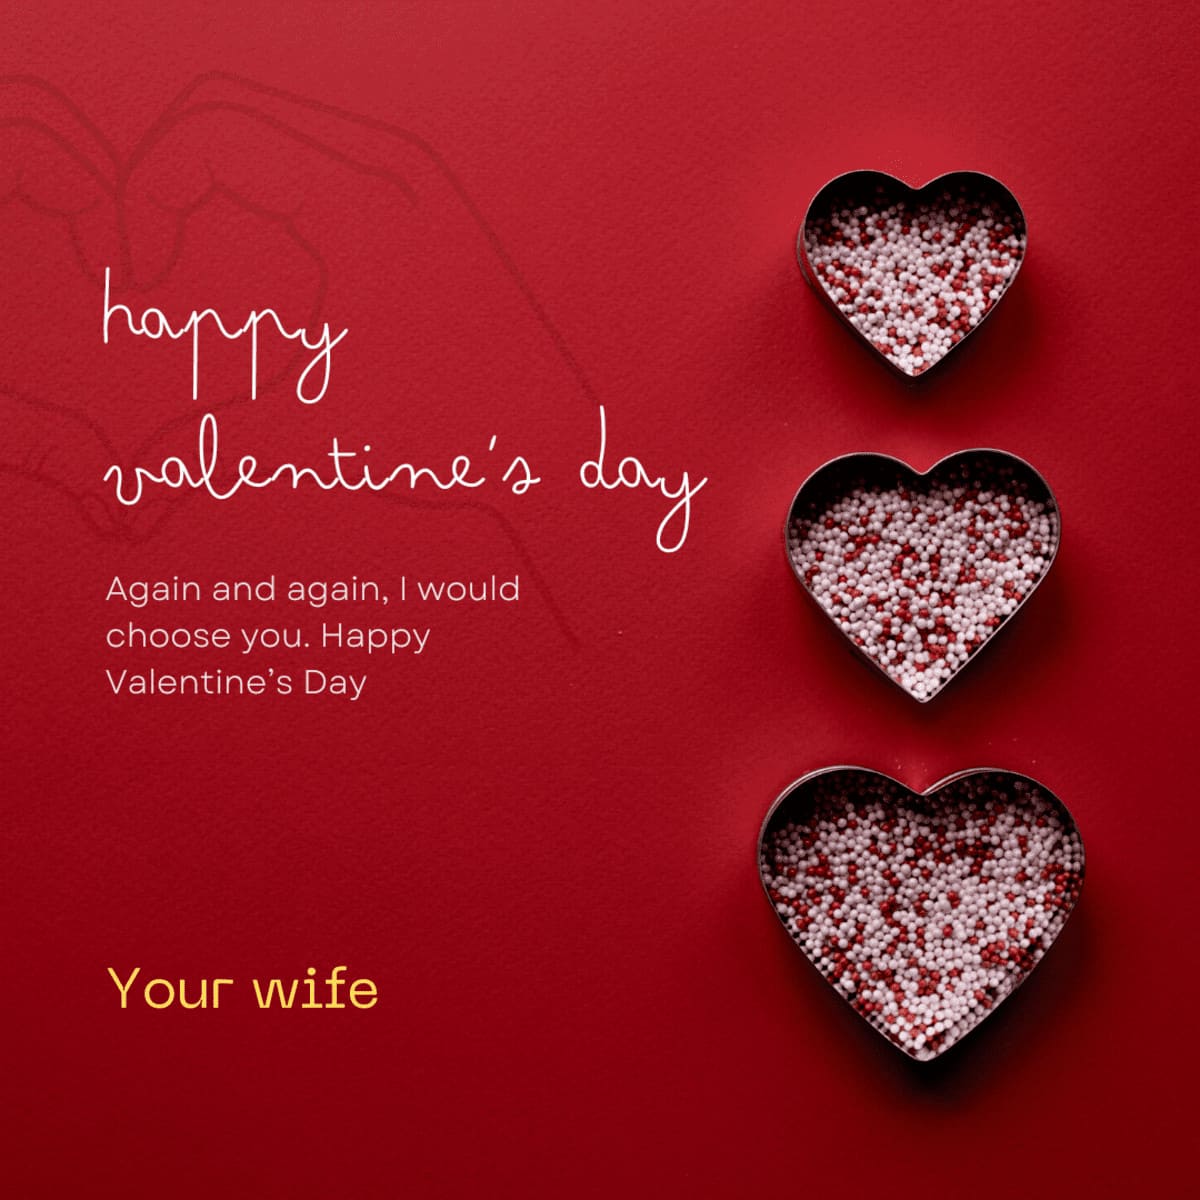 1001 mẫu thiệp chúc mừng Valentine dành tặng người đặc biệt 23